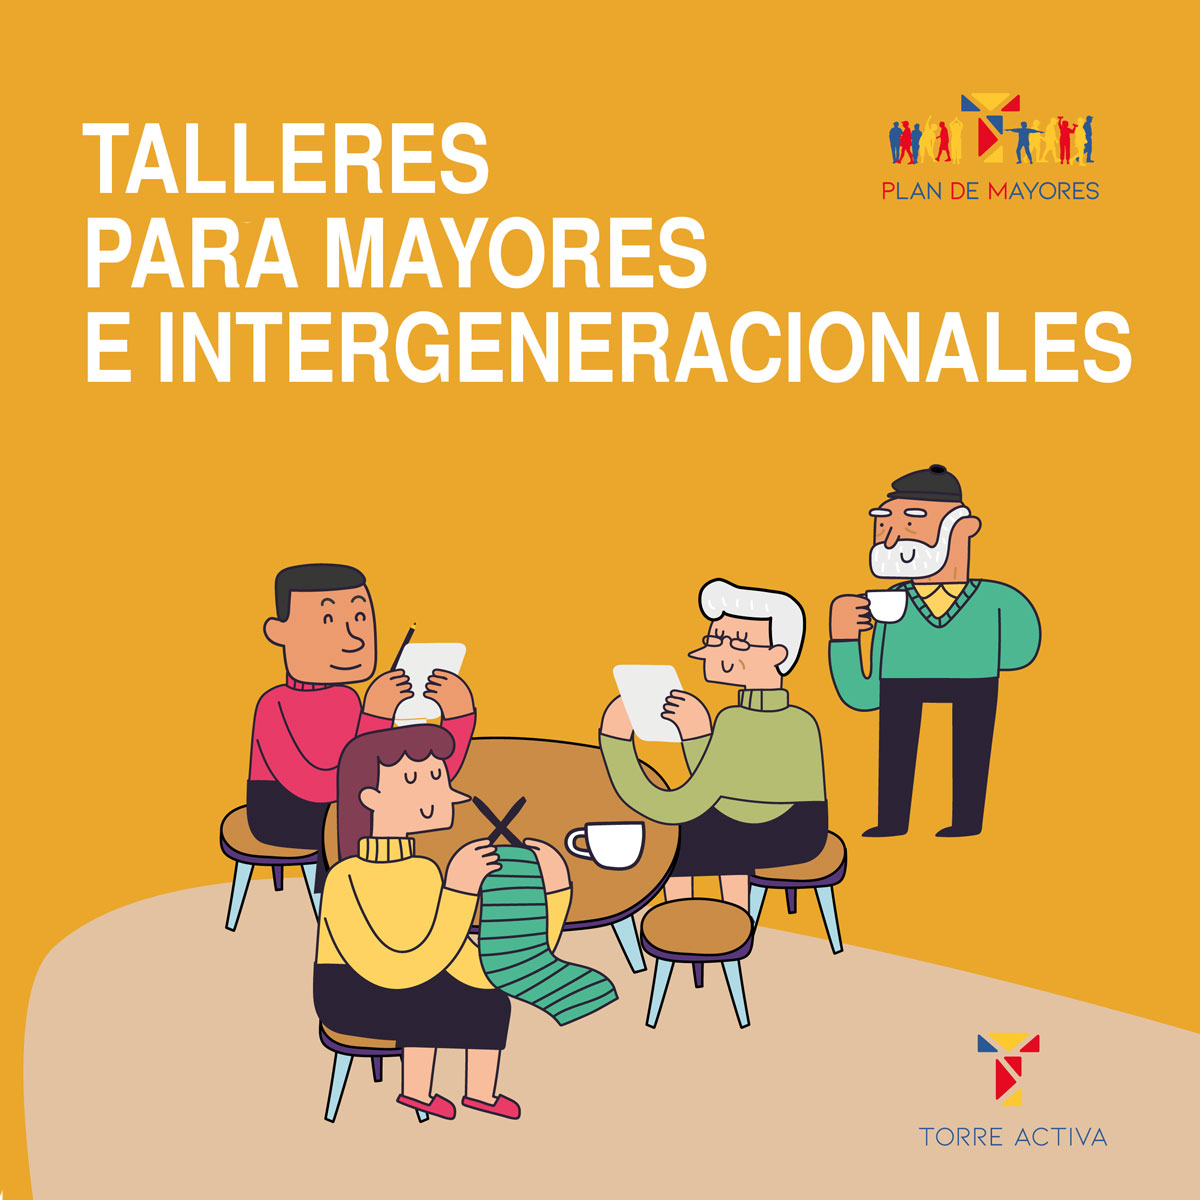 El 13 de junio se abre el plazo para solicitar plaza en los Talleres de Mayores e Intergeneracionales